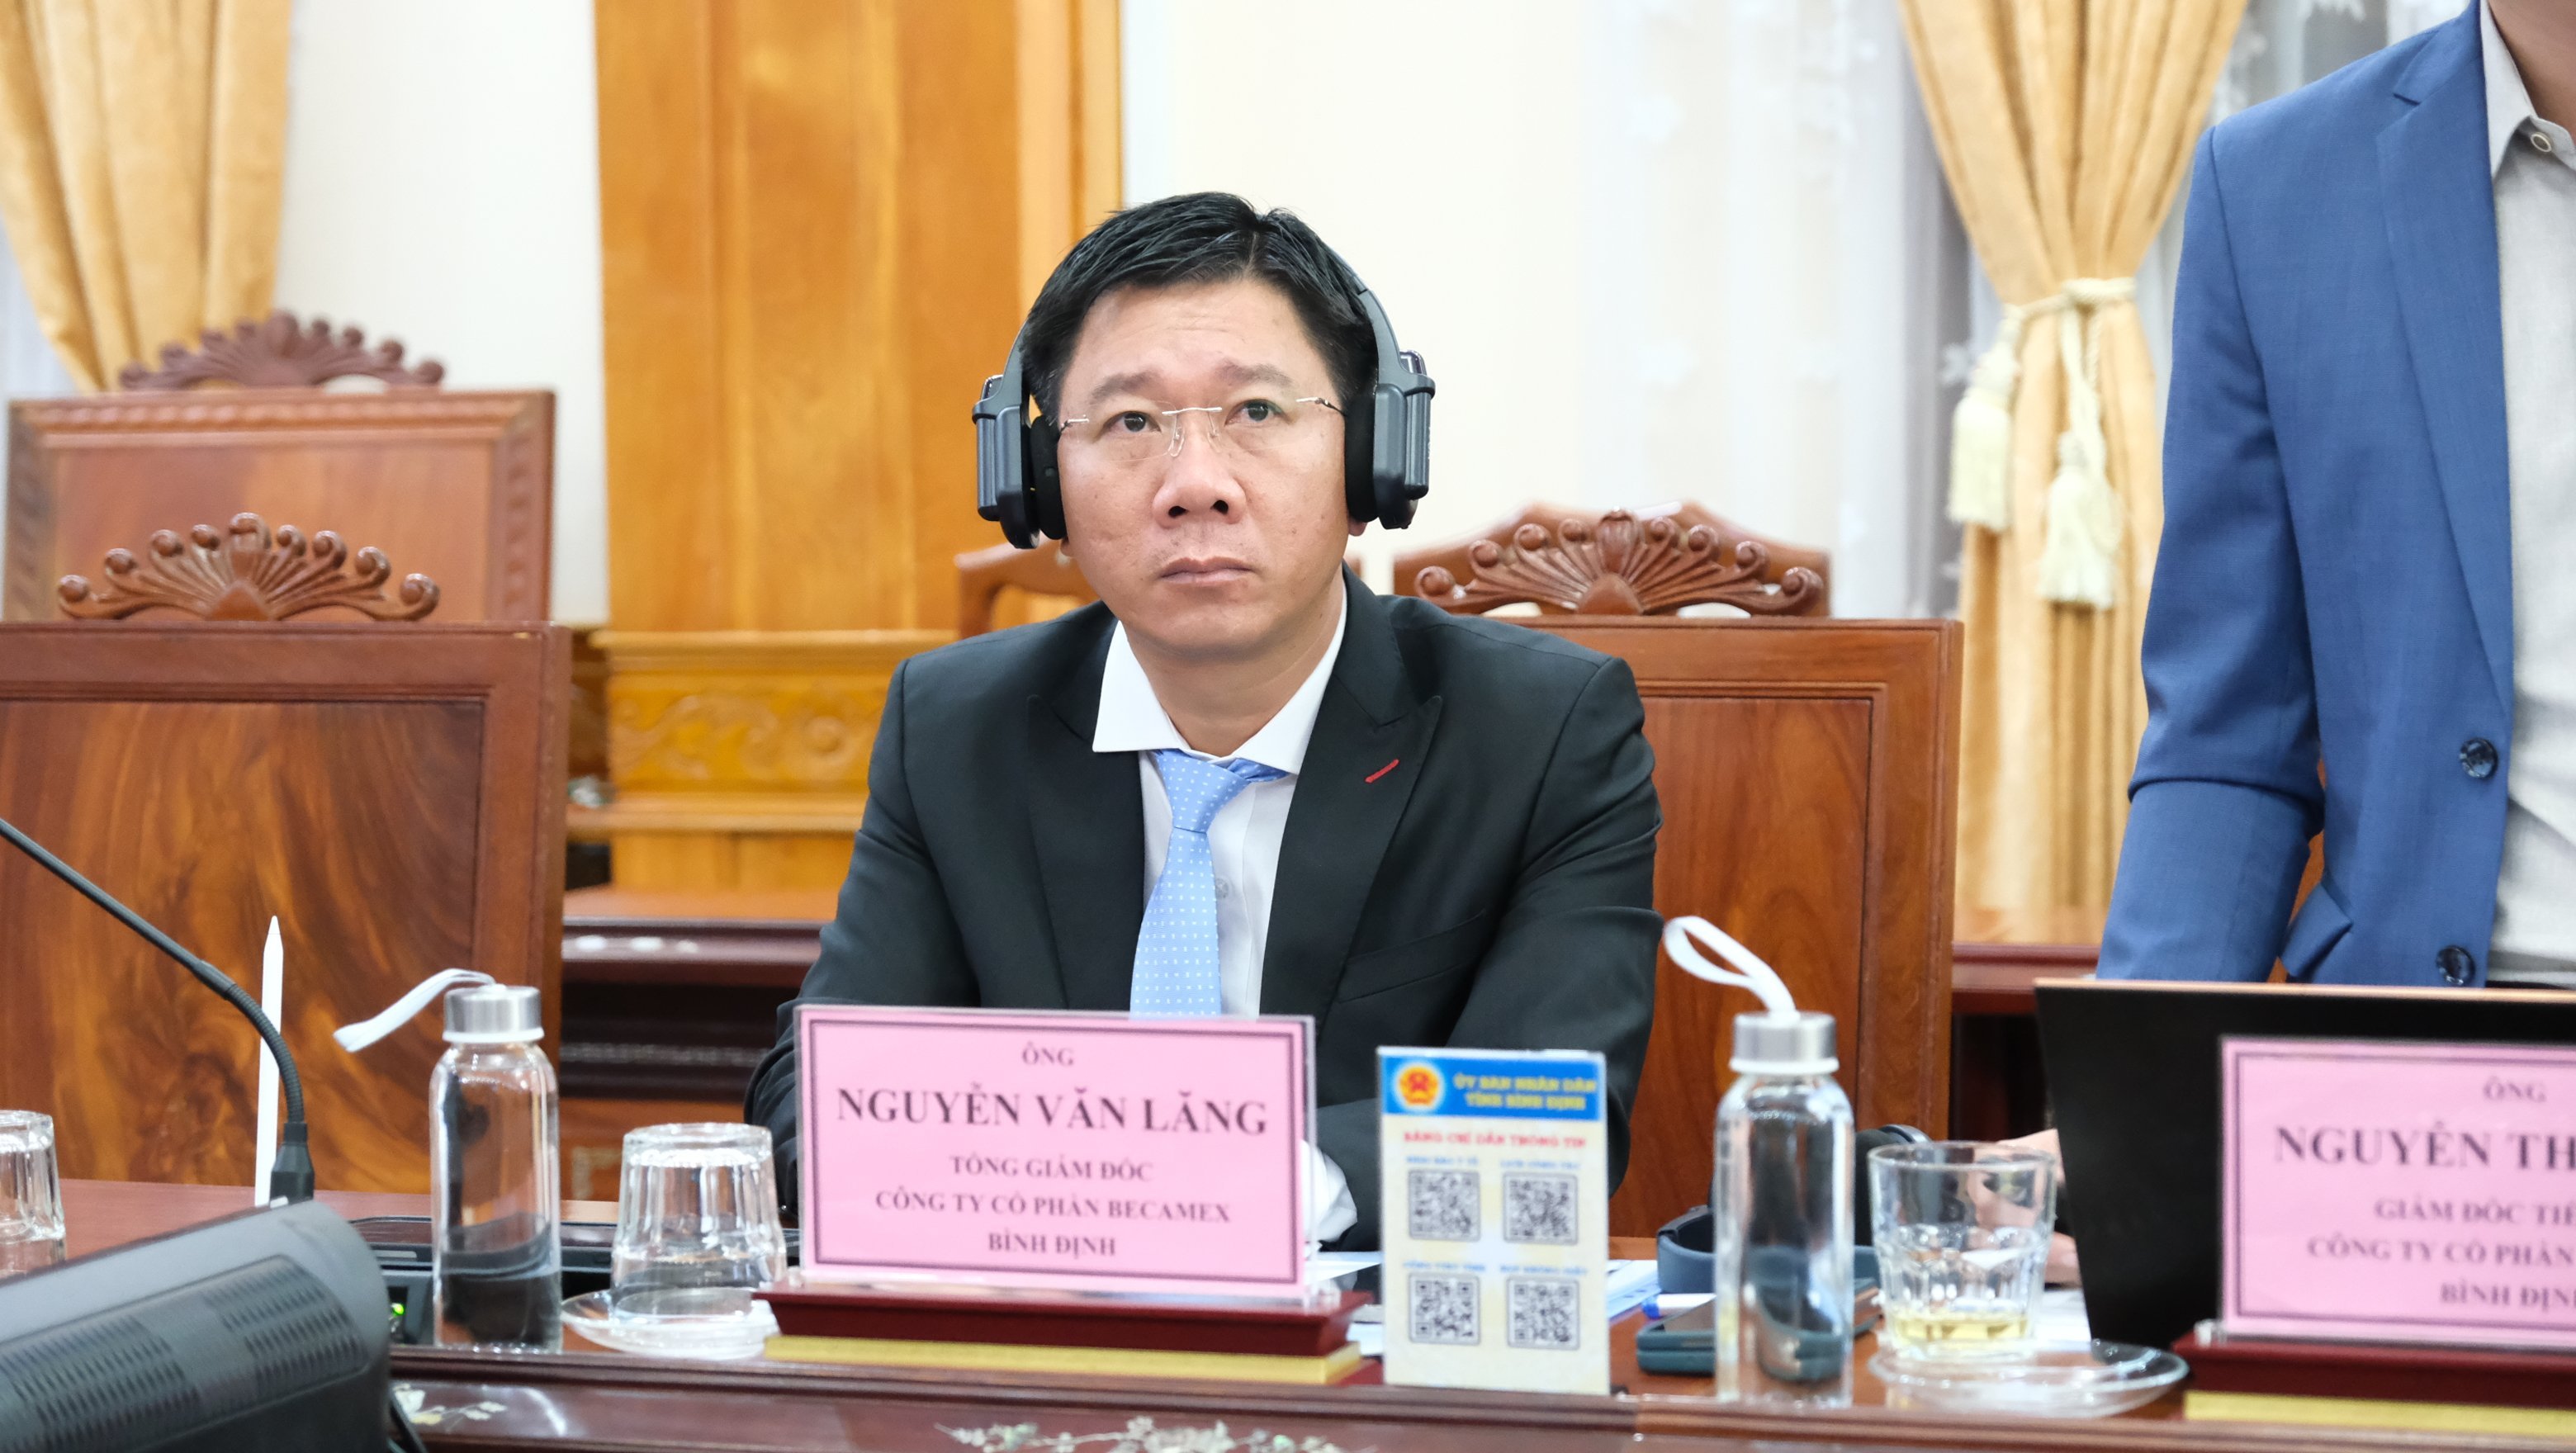 Ông Nguyễn Văn Lăng – Tổng Giám đốc Công ty CP Becamex Bình Định tại Hội nghị.